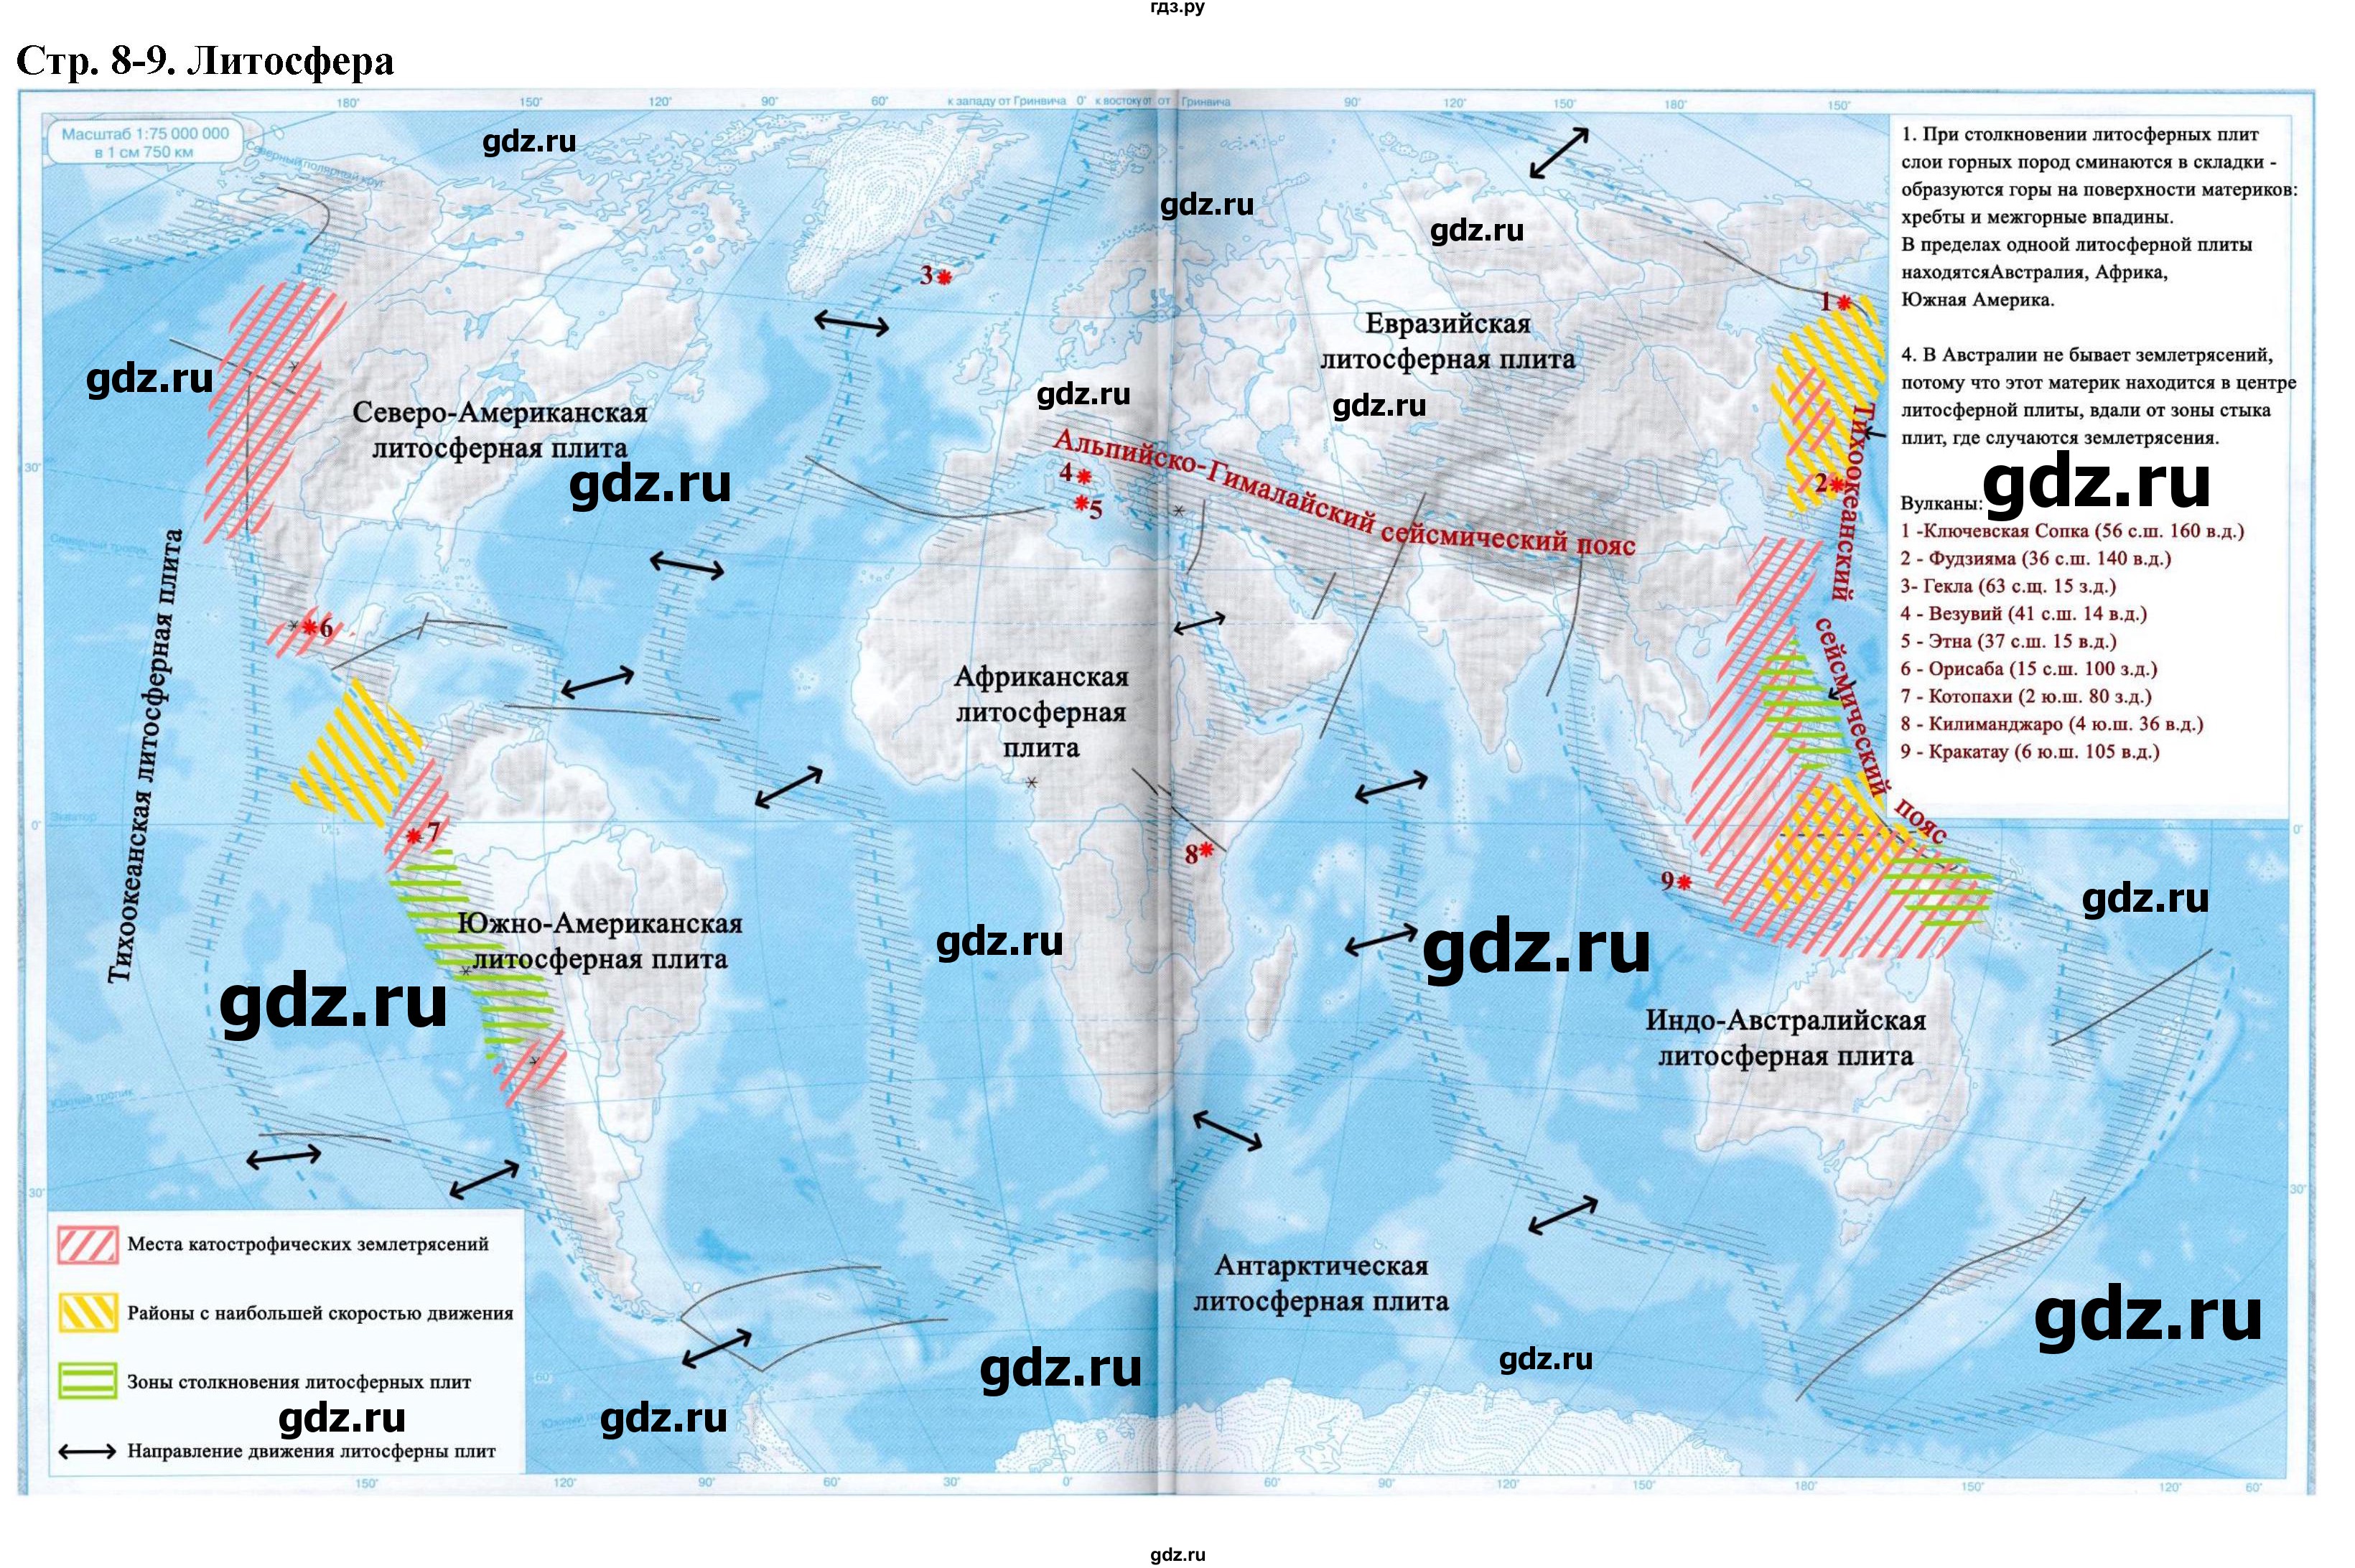 ГДЗ страница 8-9 география 6 класс контурные карты Румянцев, Приваловский